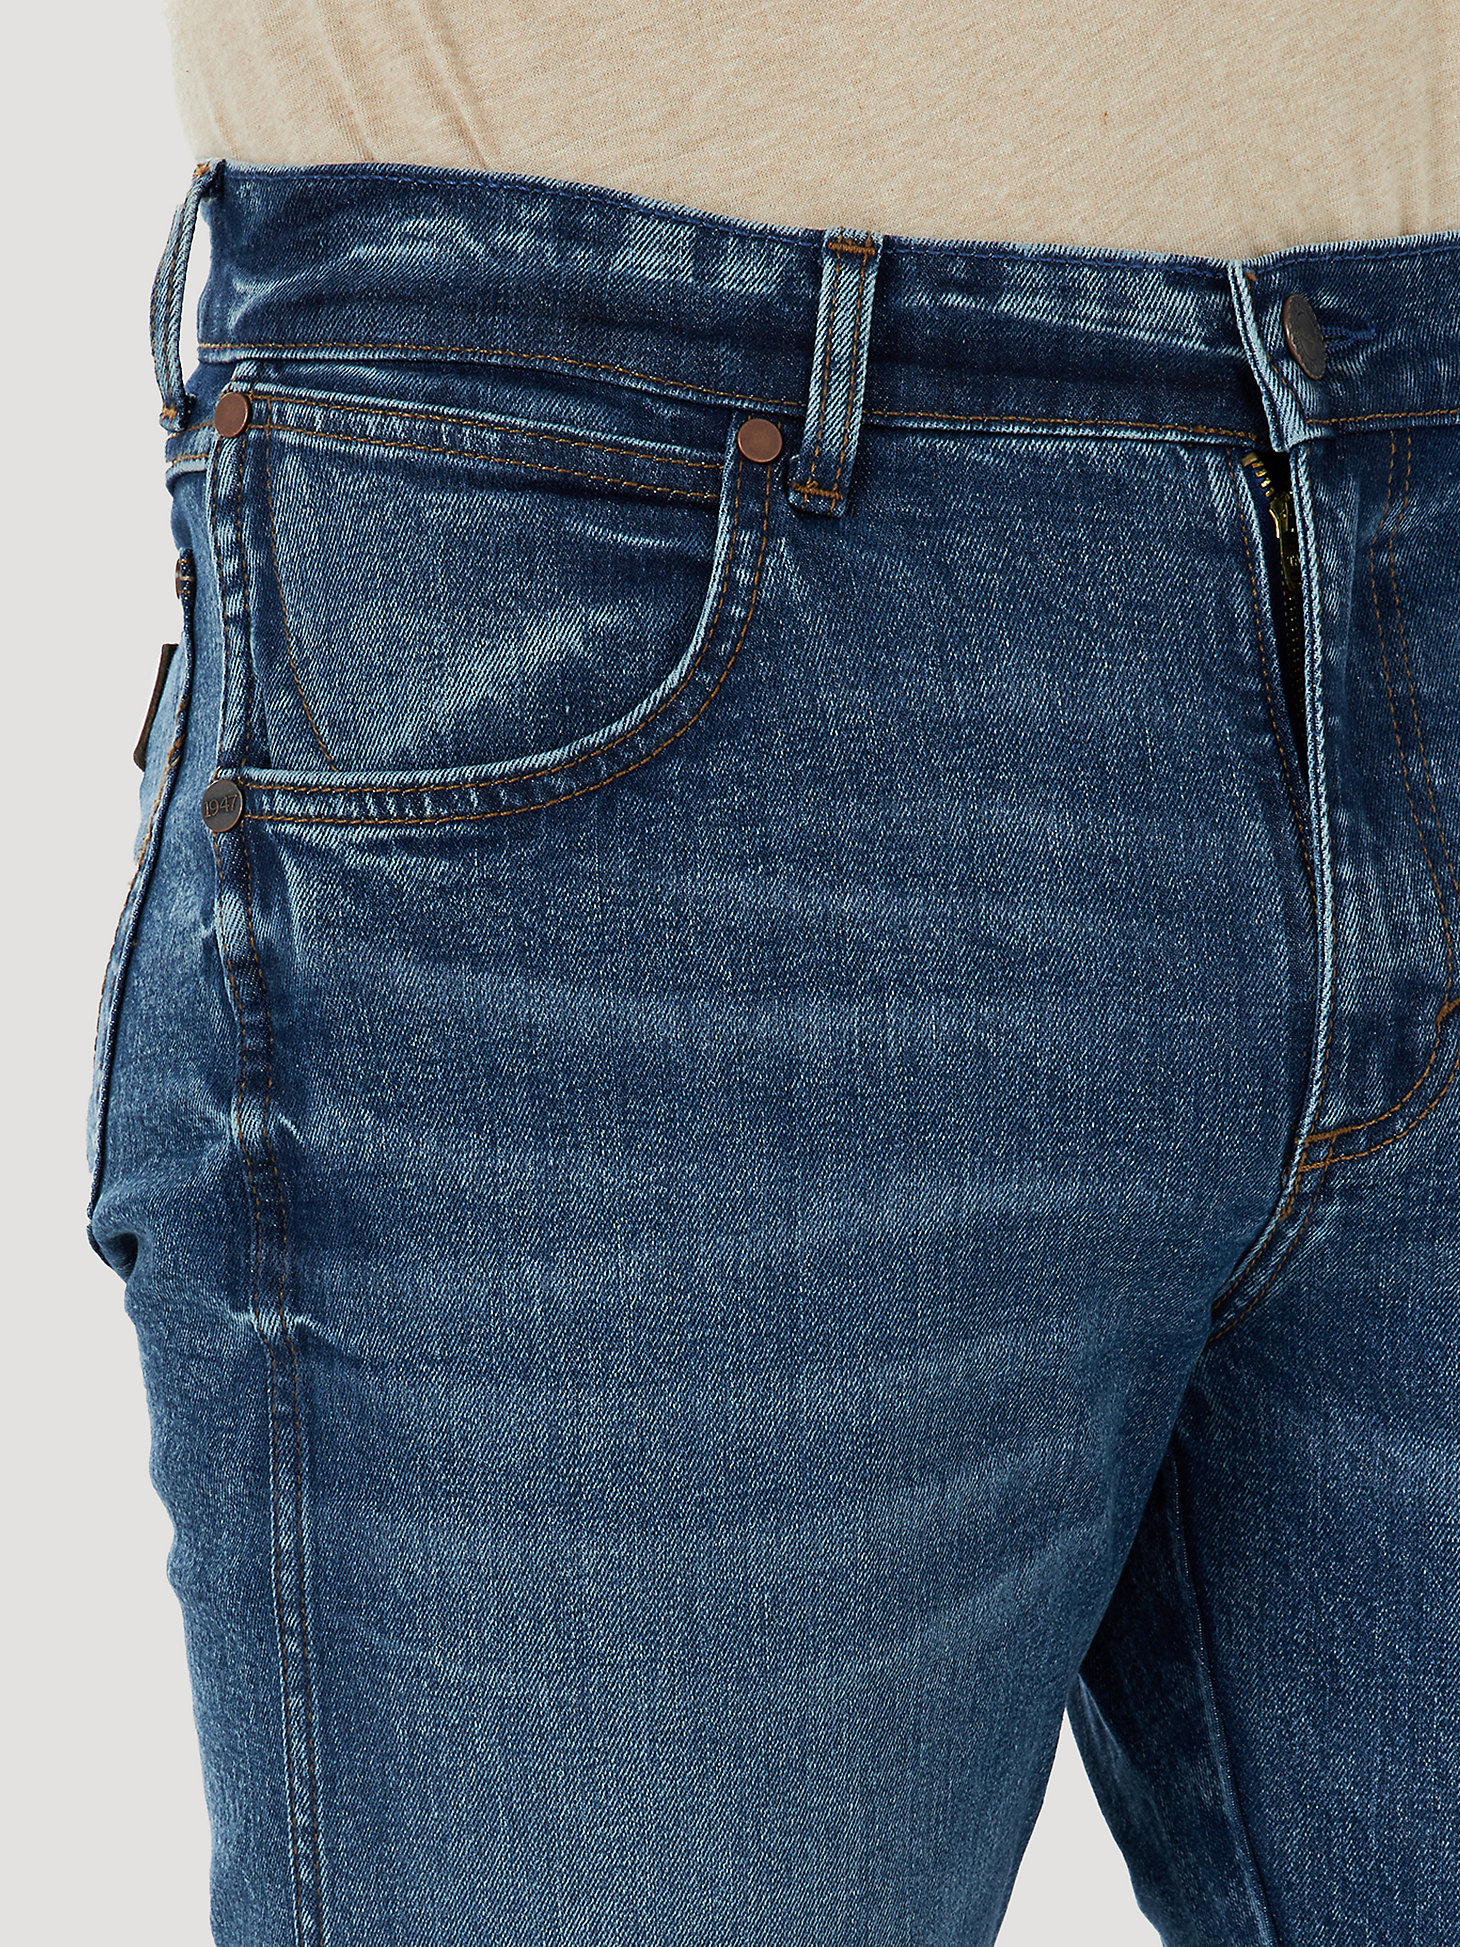 Men's Wrangler Retro® Slim Fit Bootcut Jean in Mile Post alternative view 4